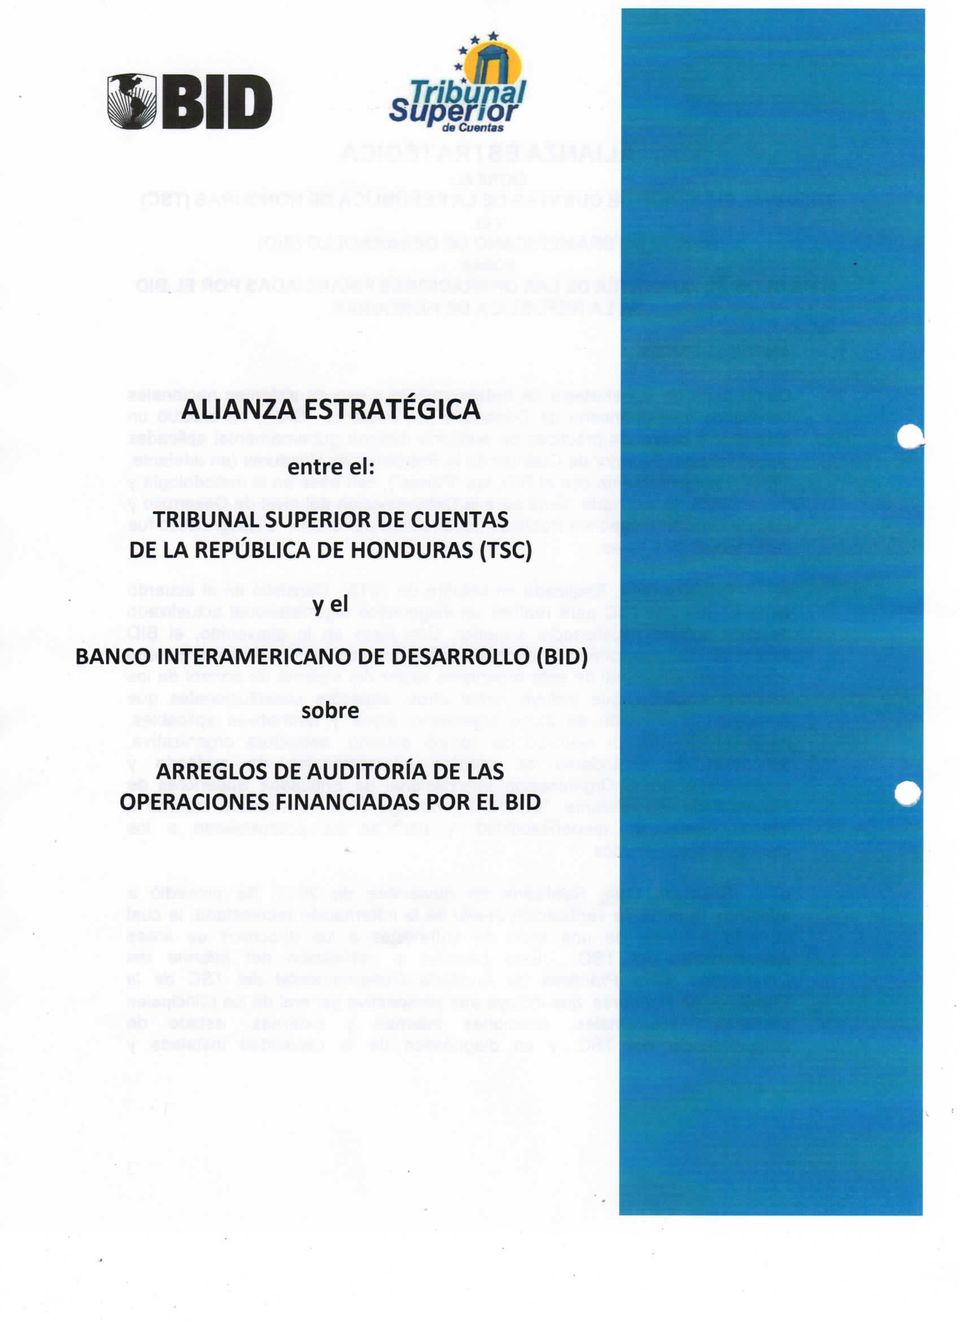 HONDURAS (TSC) y el BANCO INTERAMERICANO DE DESARROLLO (BID)